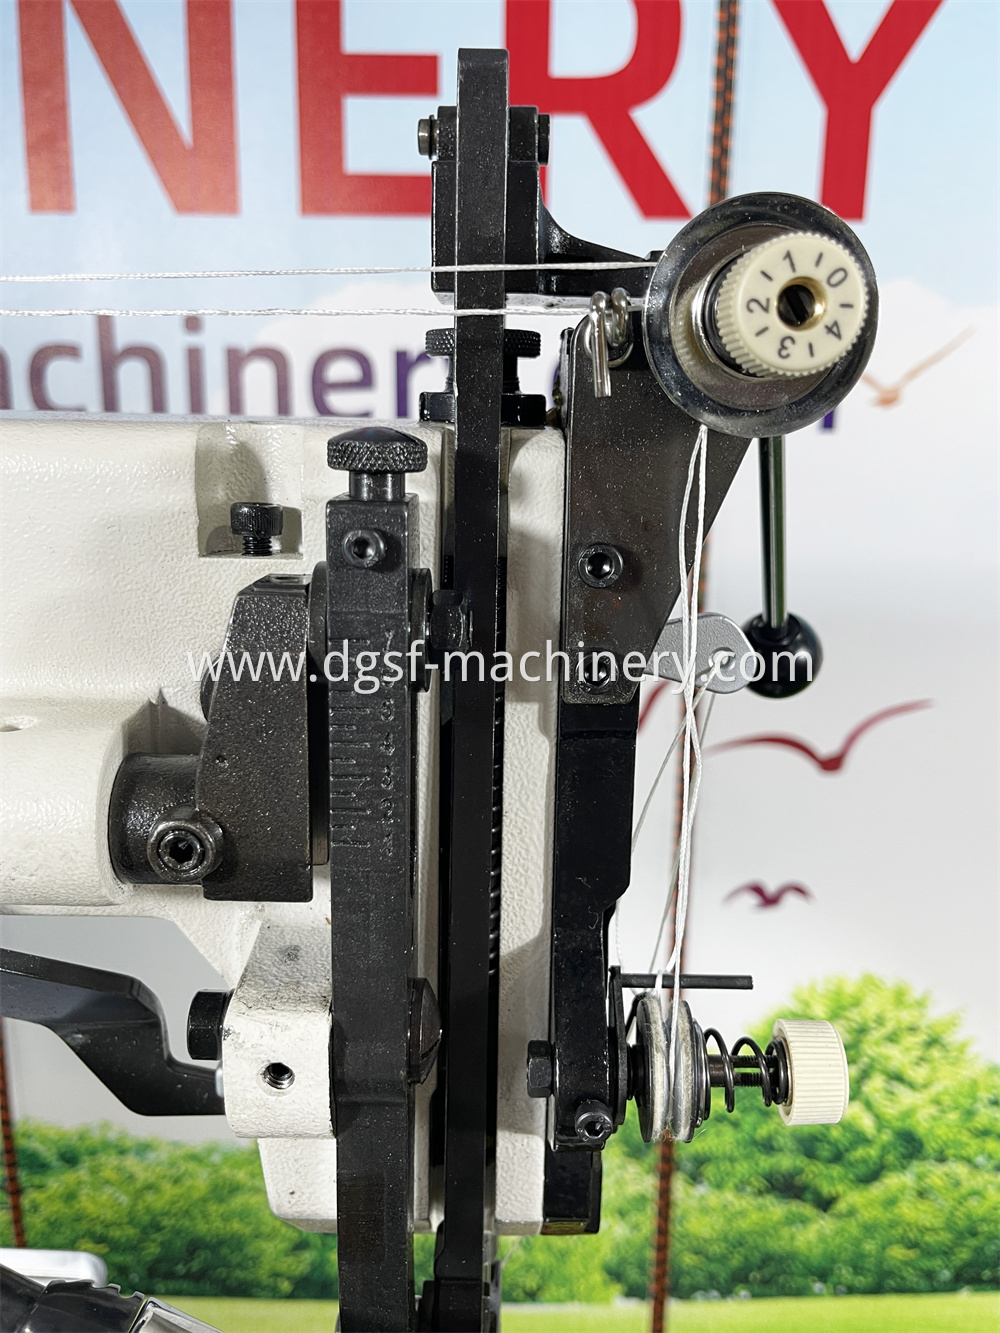 Heavy Duty Cylinder Bed Sewing Machine Lx 205b 7 Jpg